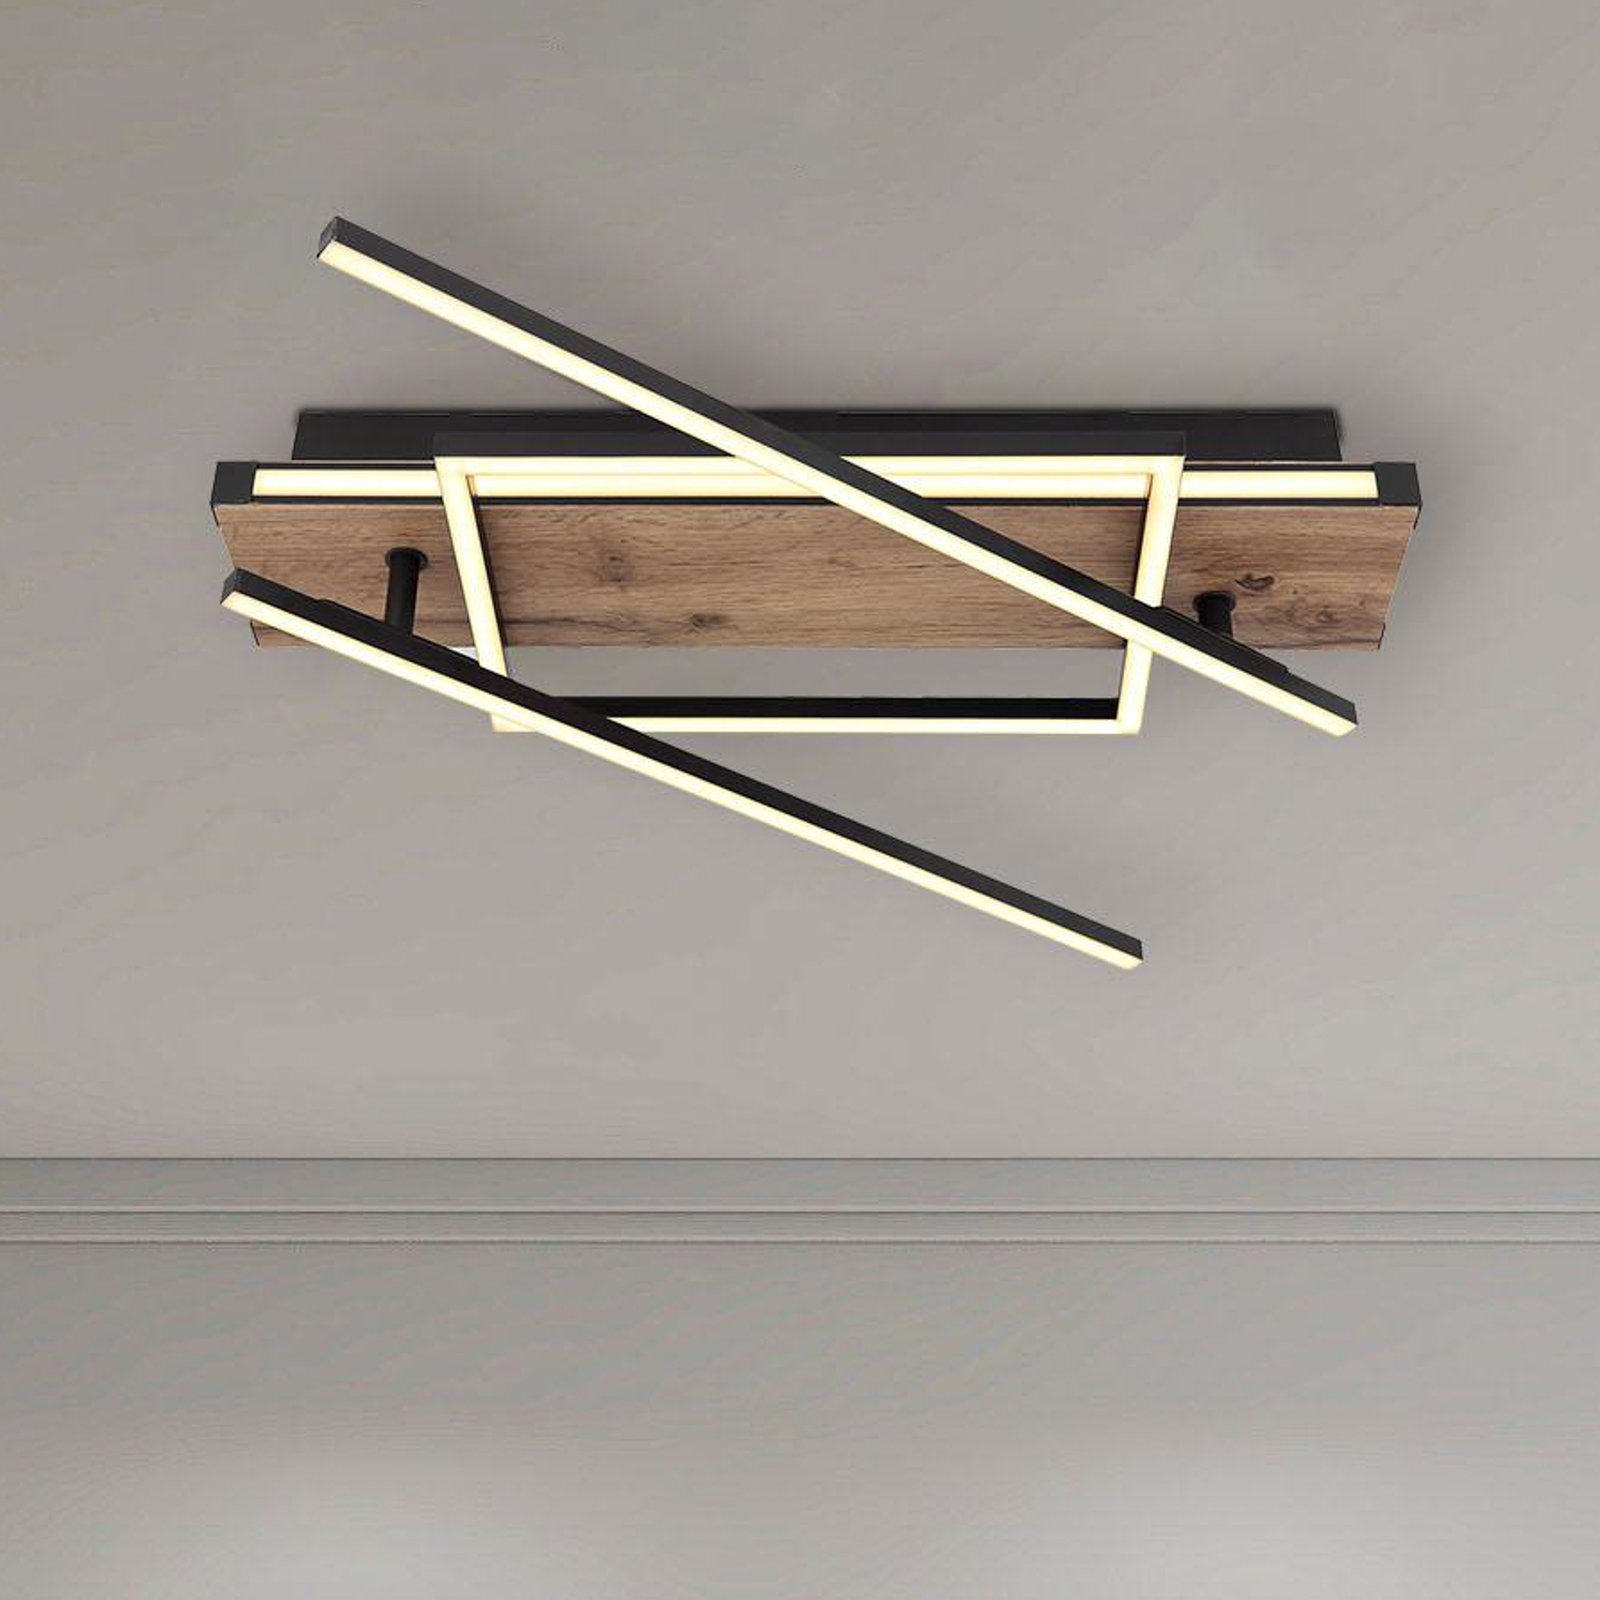 Lampa sufitowa LED Colli, szerokość 52 cm, ciemne drewno, drewno